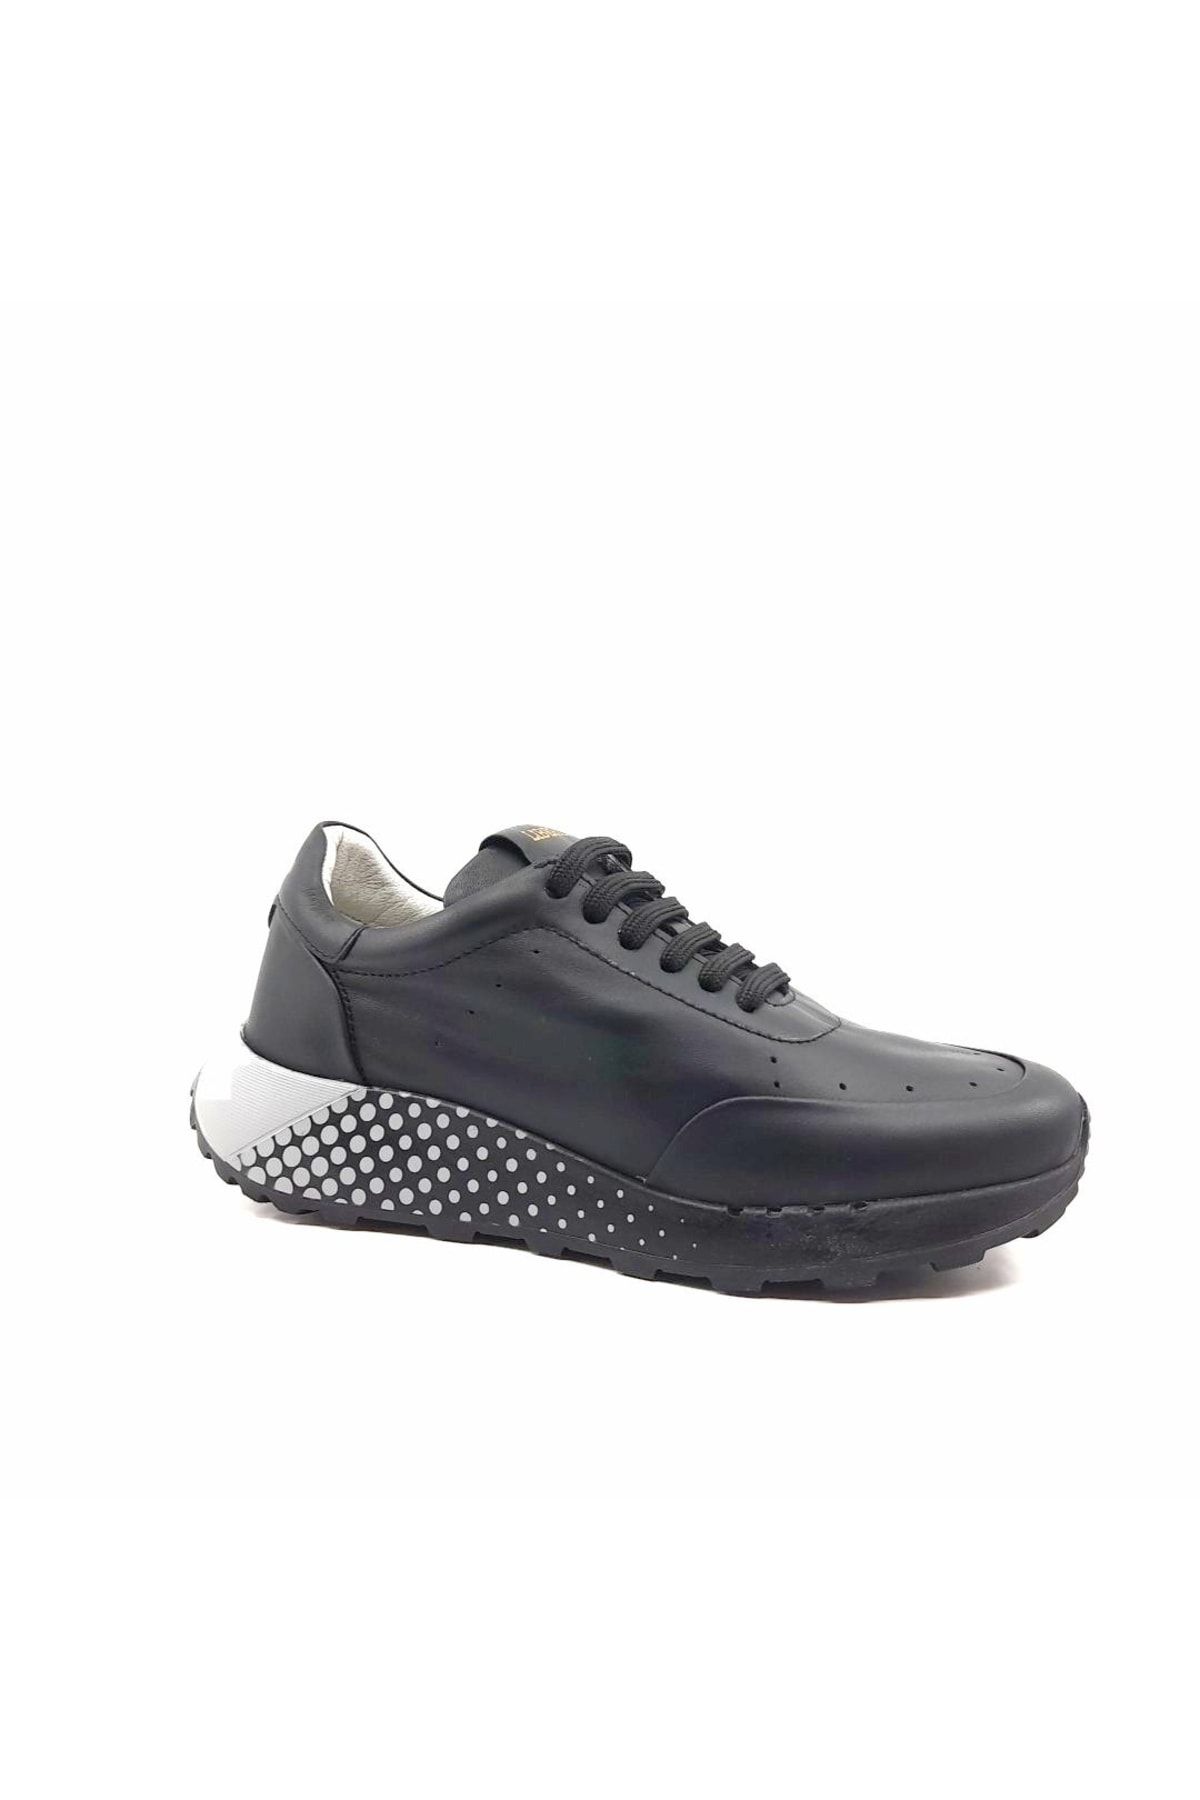 Libero 4346 Siyah Renk Hakiki Deri Yazlık Kadın Spor Ayakkabı